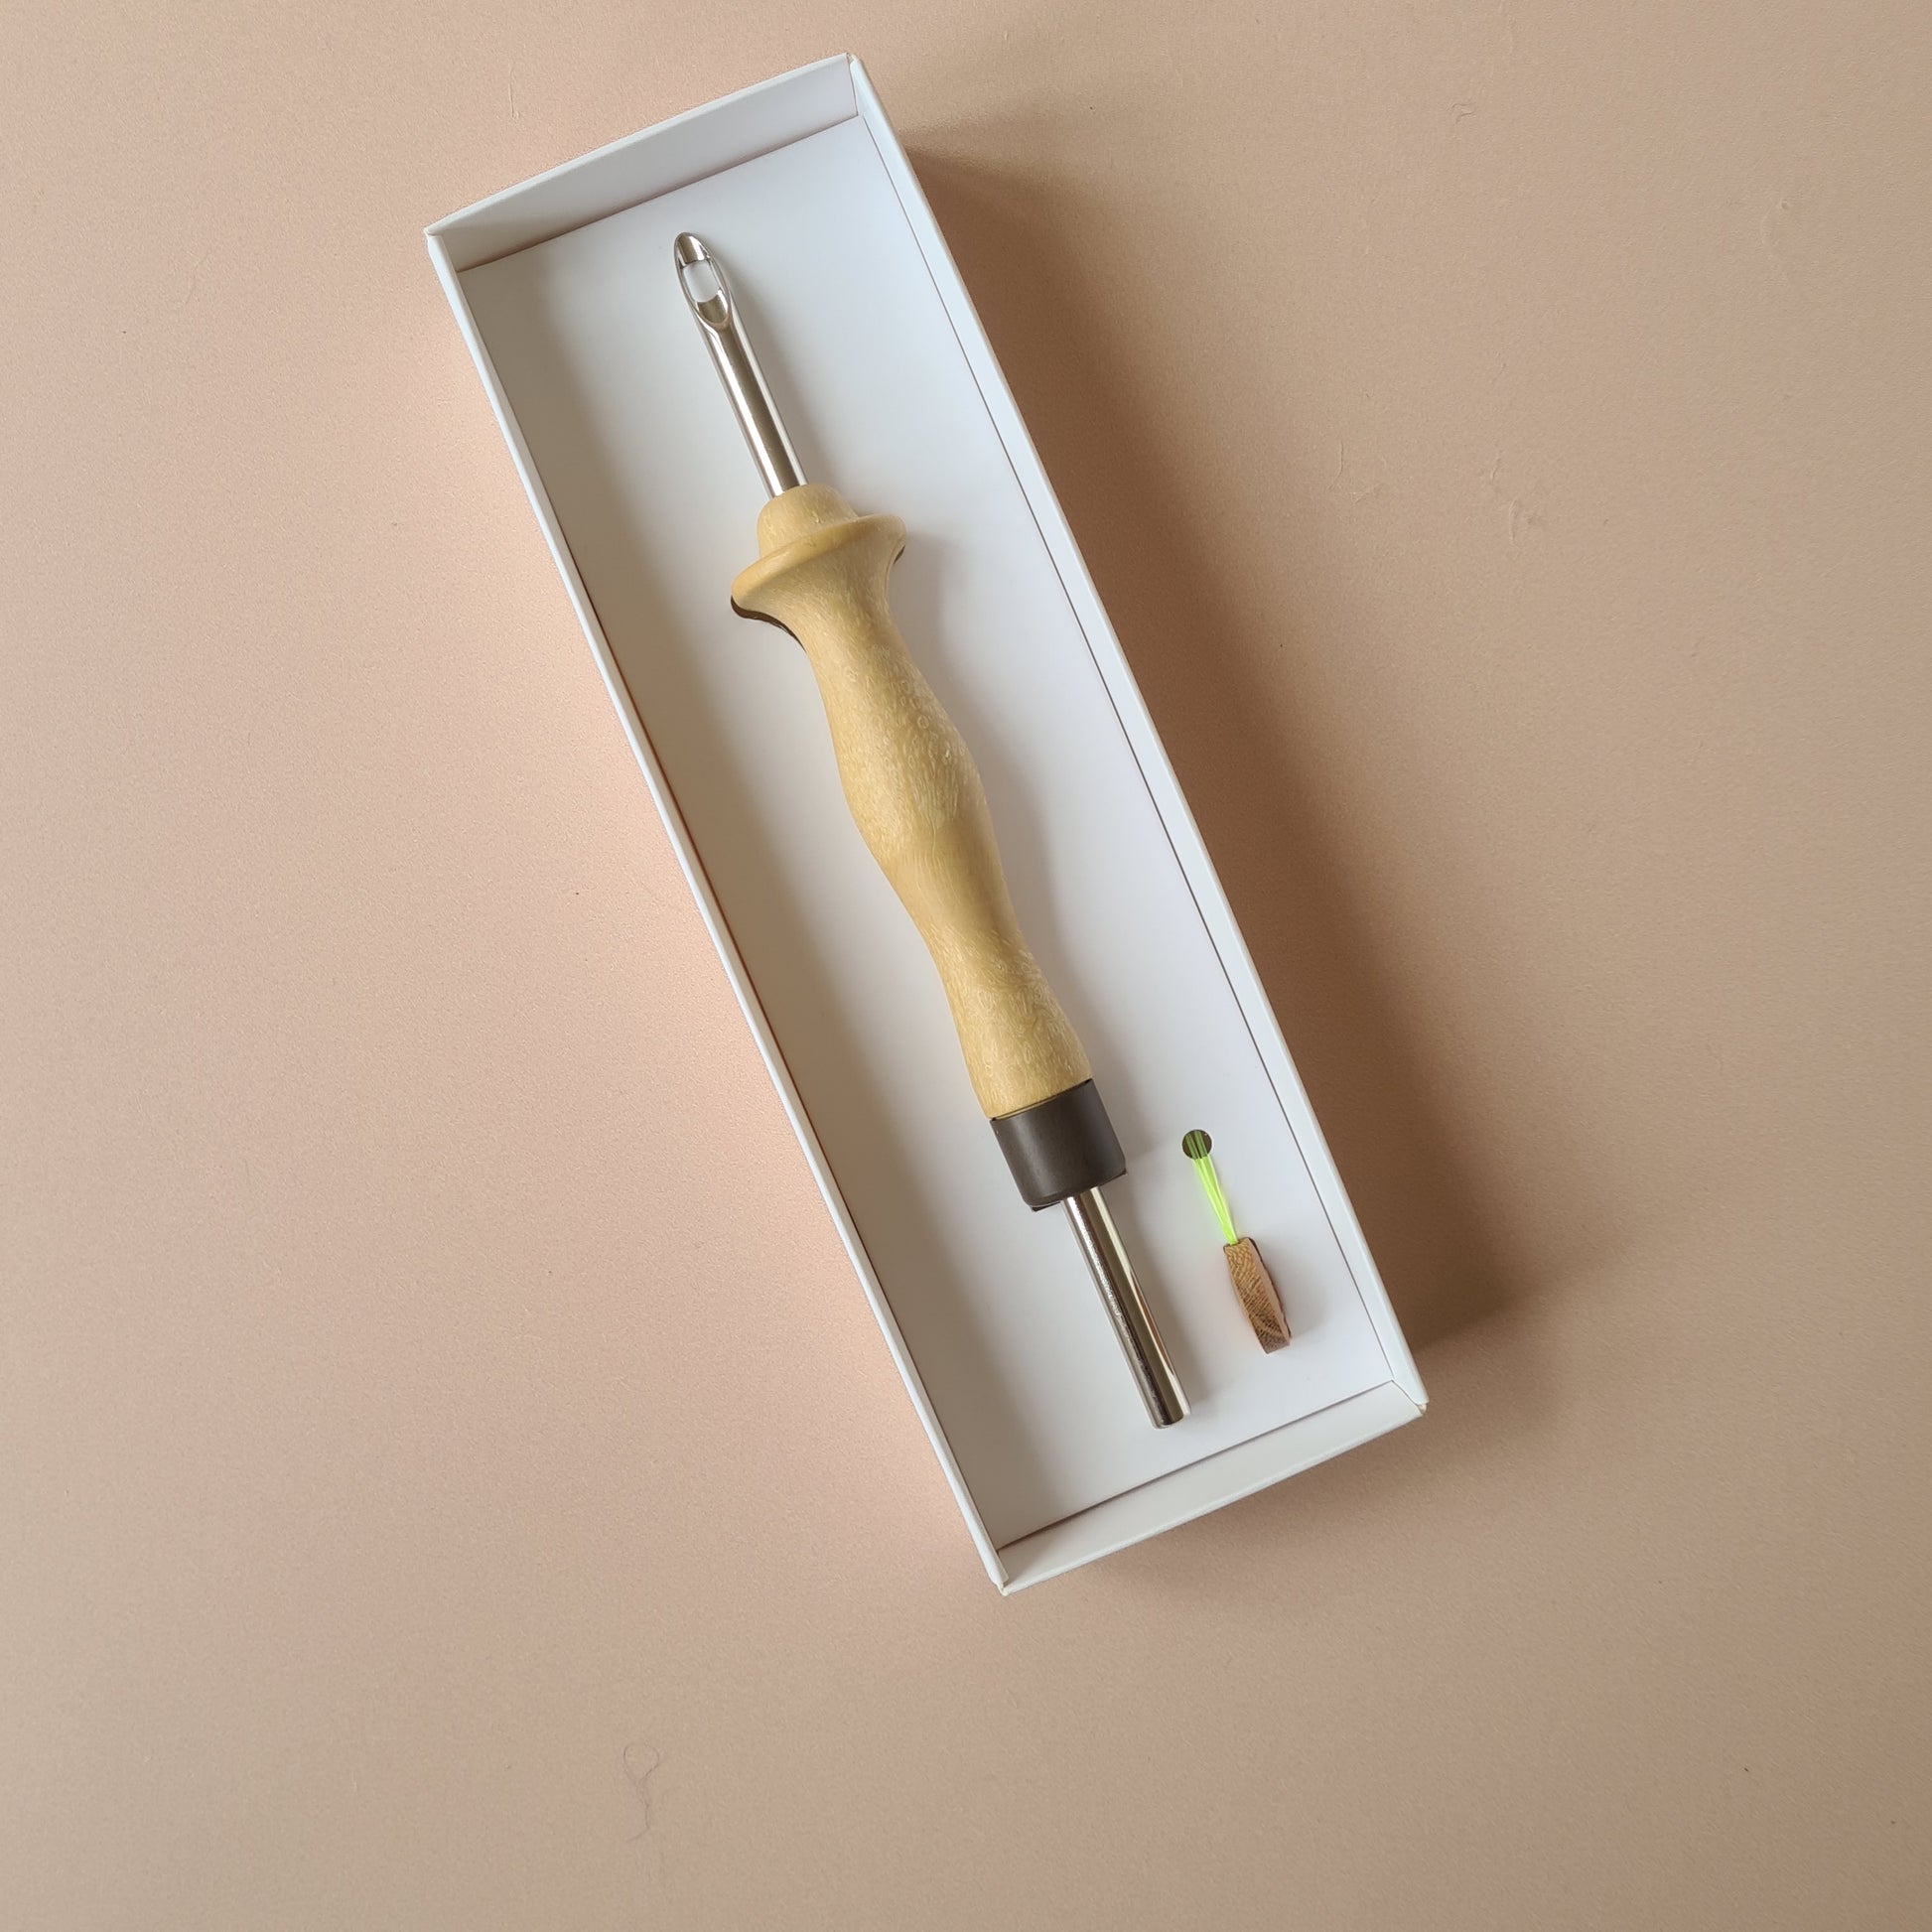 Lavor adjustable punch needle Australia – Mego Workshop